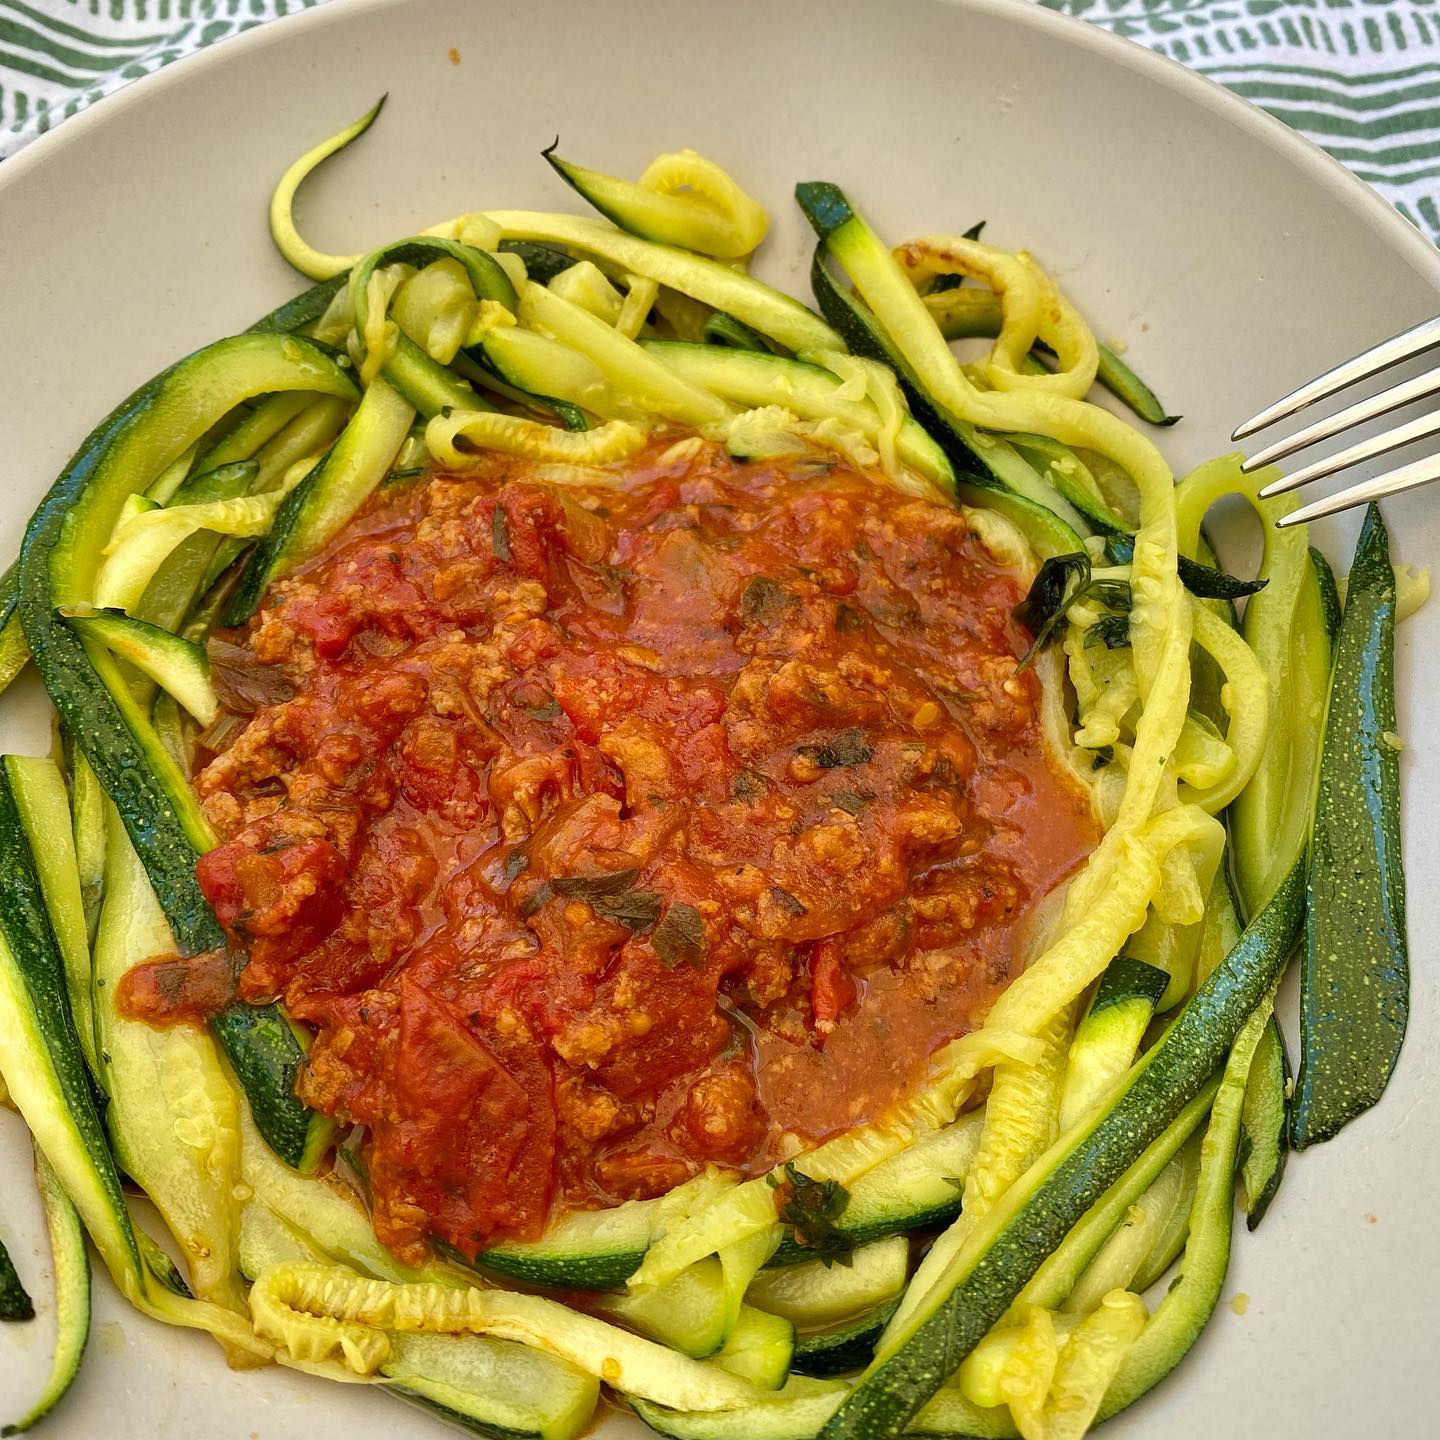 zucchini noodle In spaghetti sauce